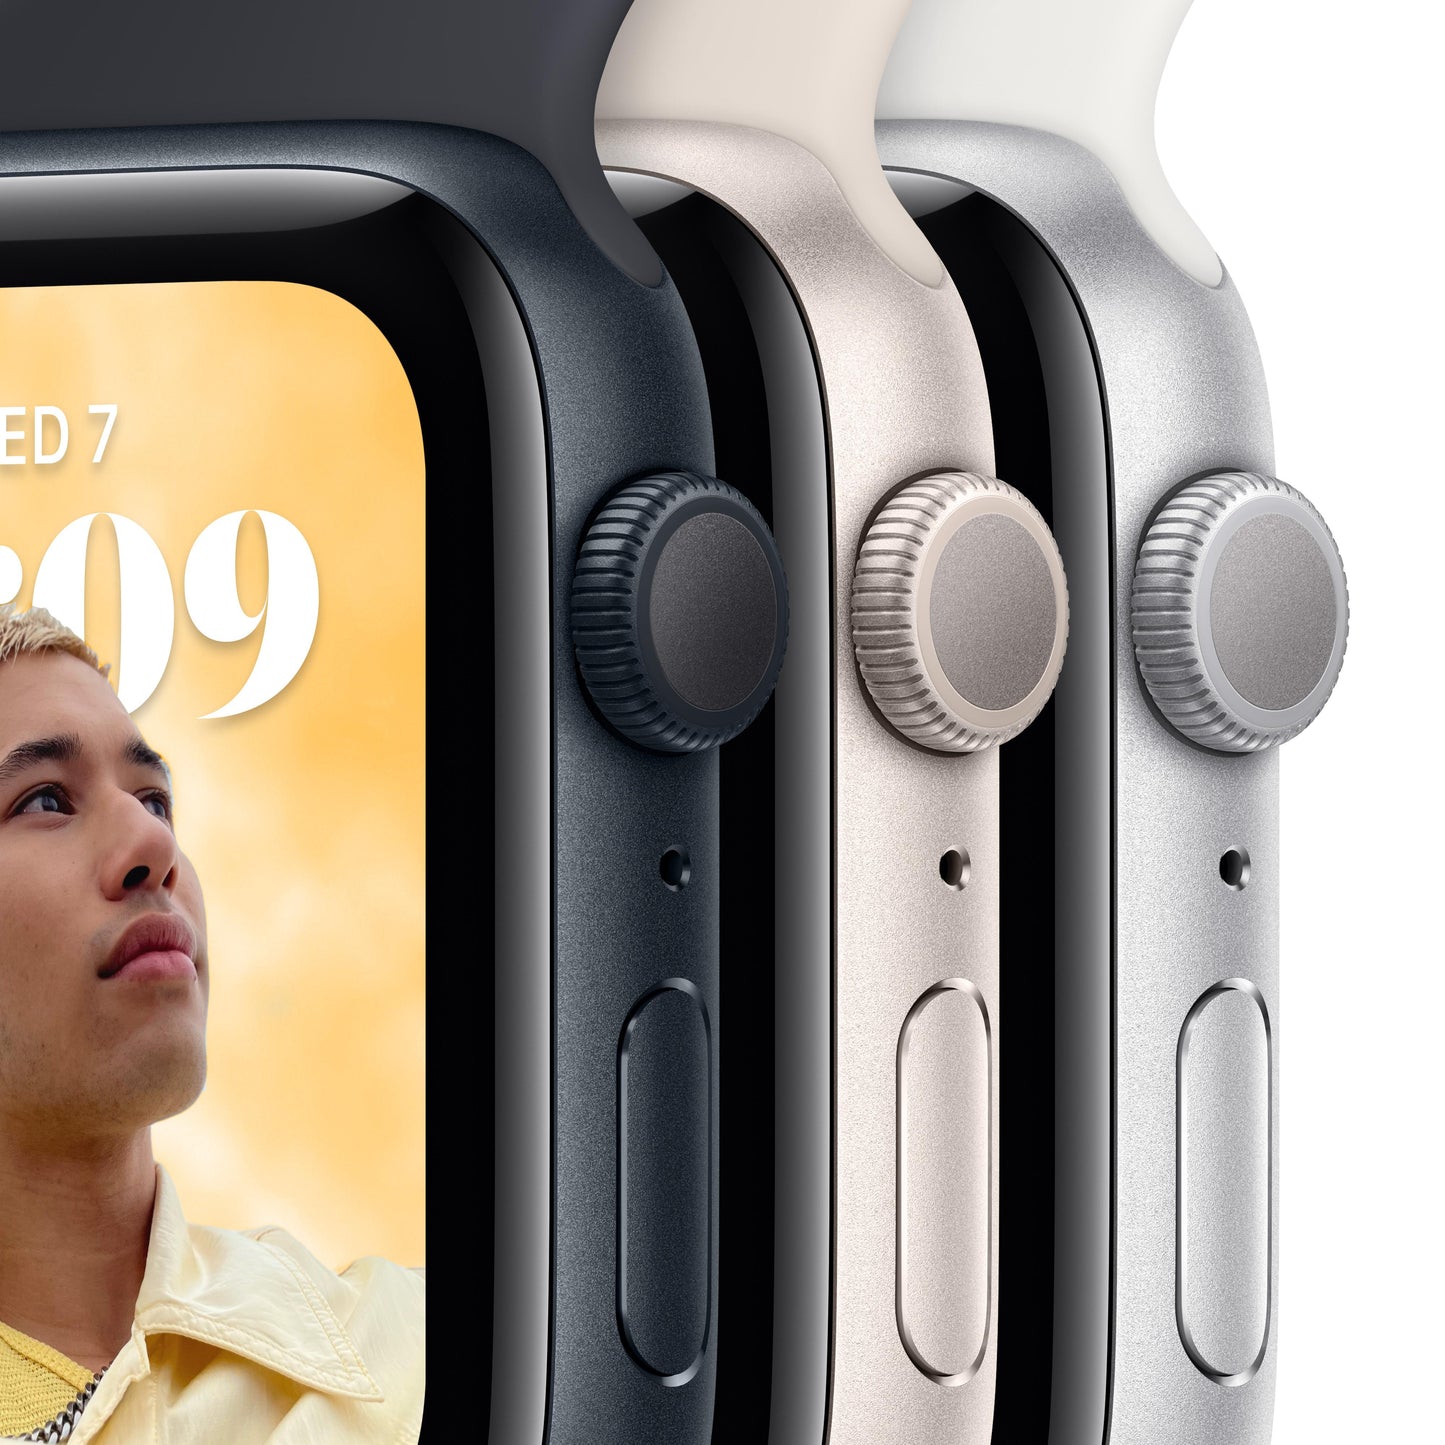 ساعة Apple Watch SE GPS 44 مم باللون الفضي وإطار من الألمنيوم مع Loop رياضي أبيض - عادي